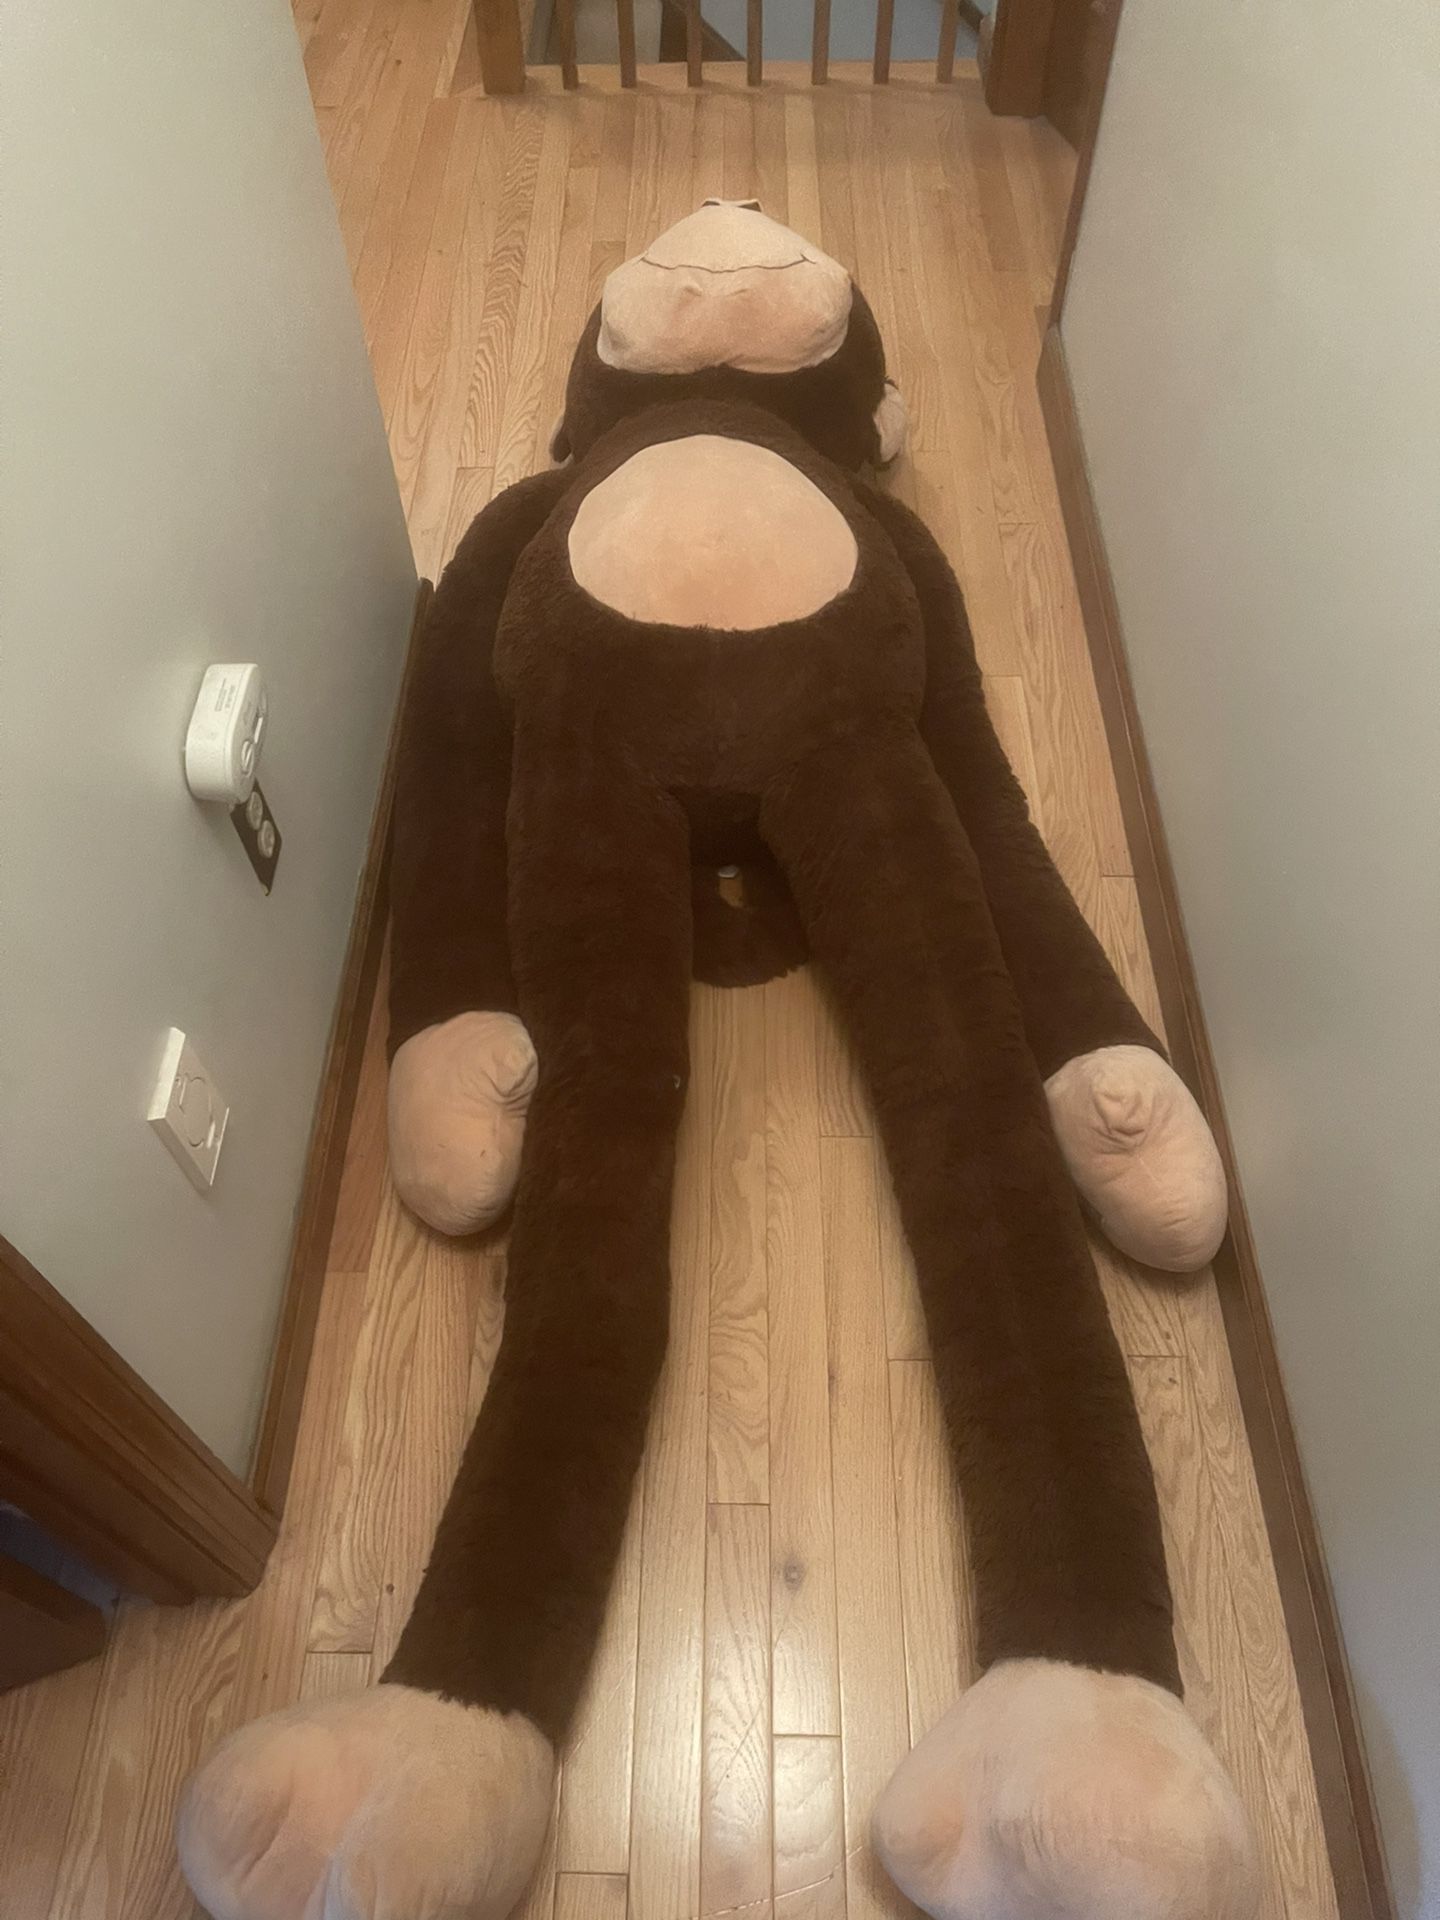 8 Foot Stuffed Monkey 